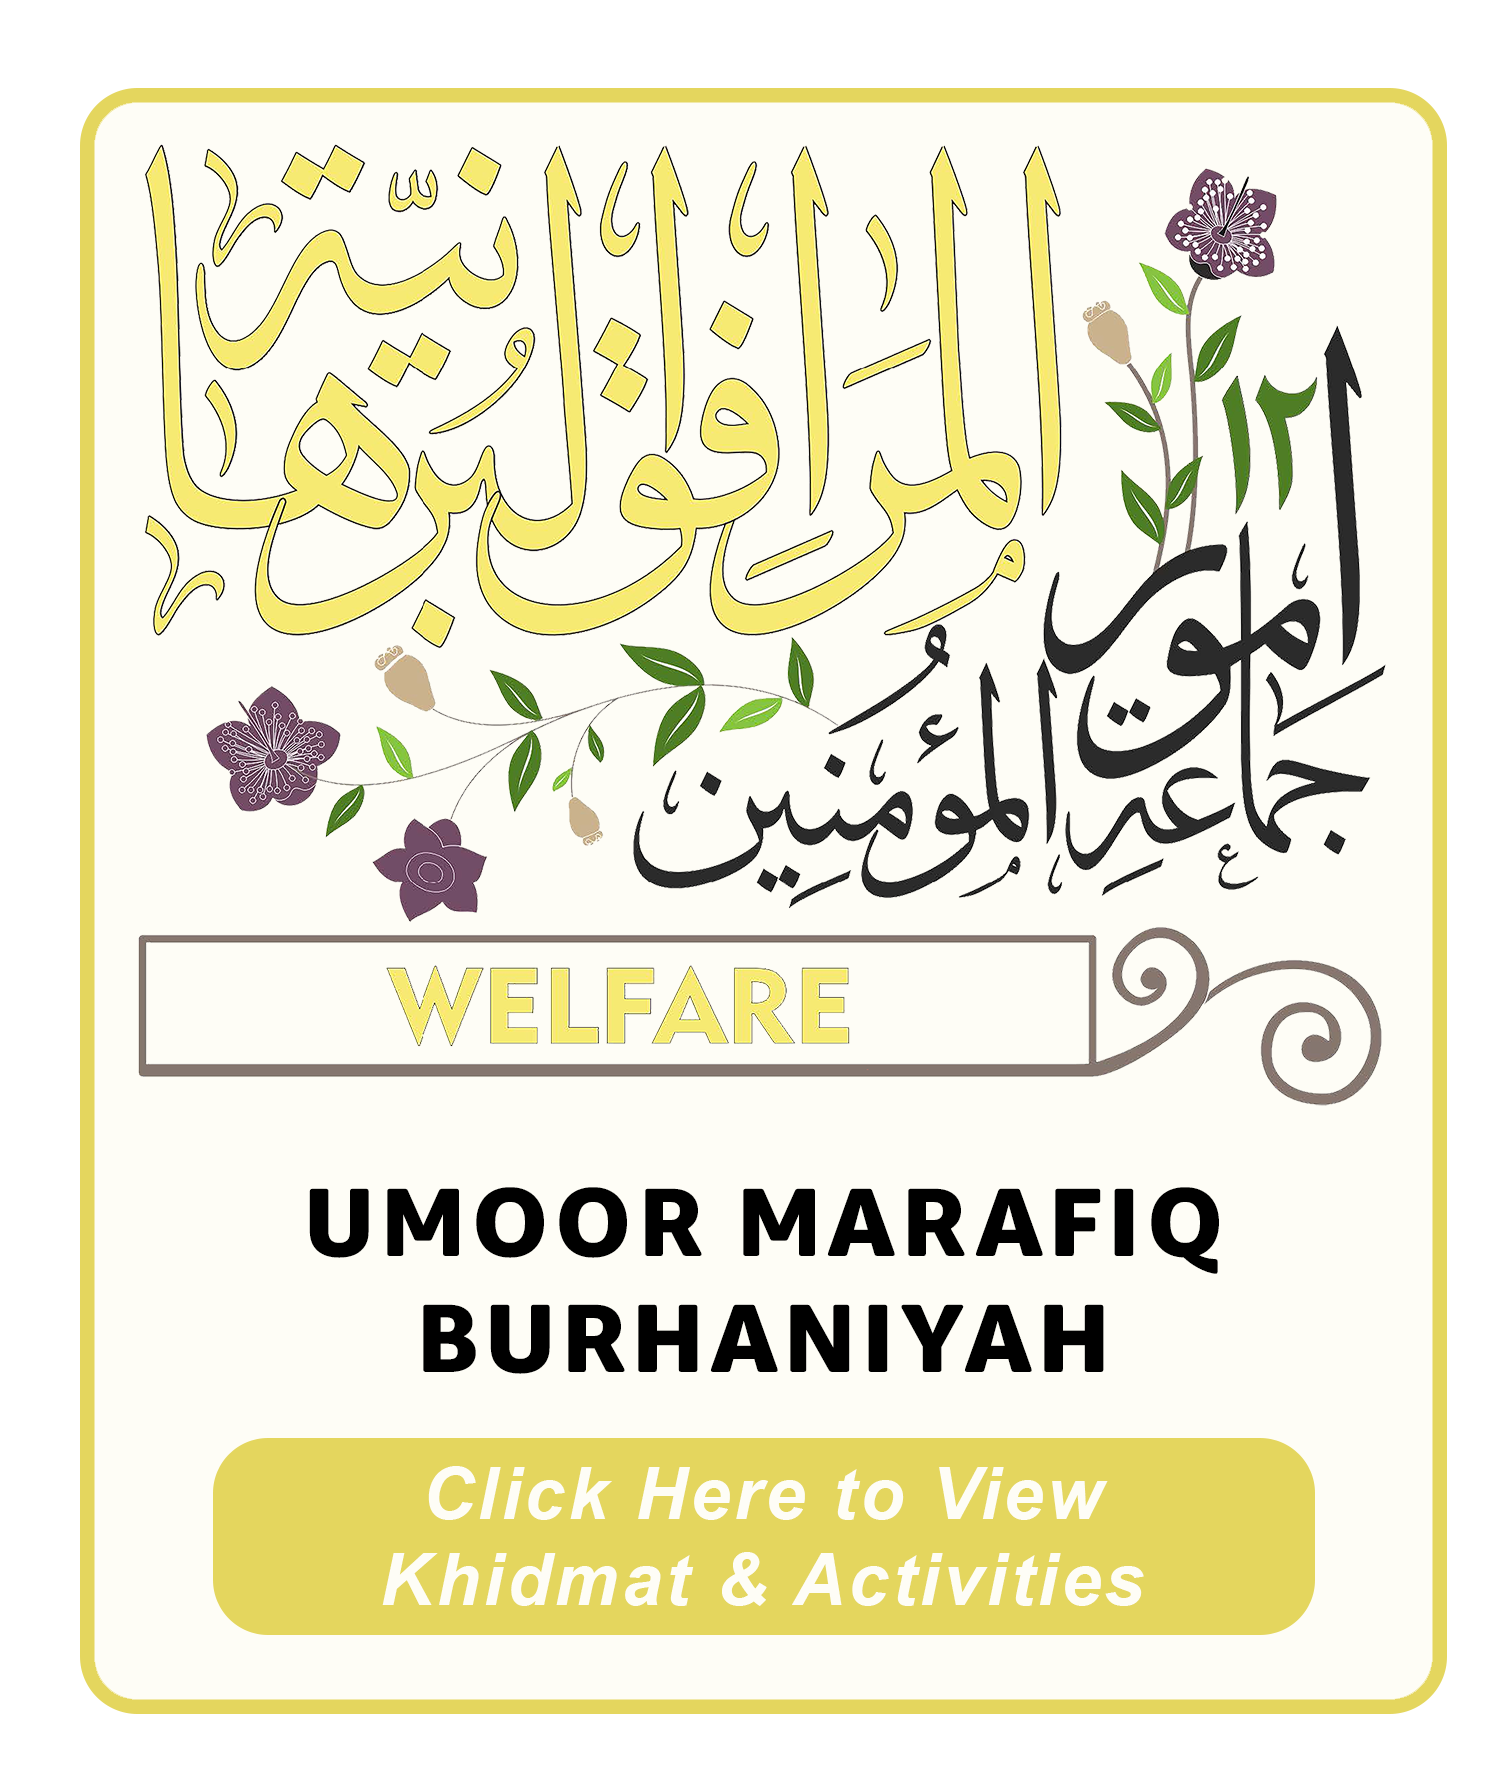 Umoor Marafiq Burhaniyah